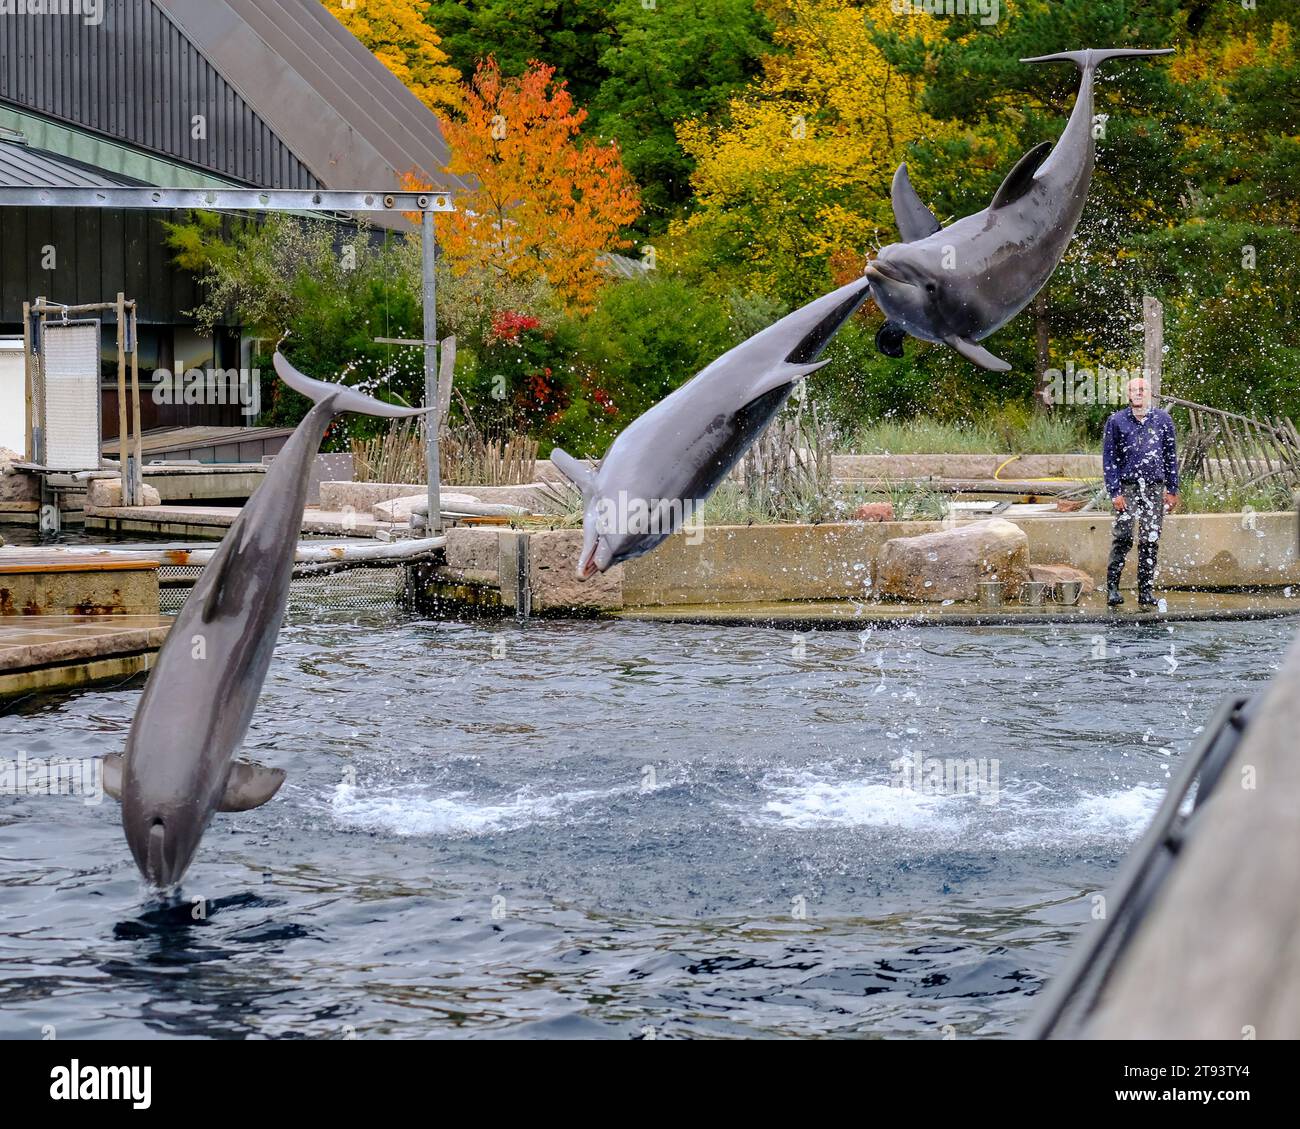 Springende Delfine in einer Show im Nürnberger Zoo, aufgenommen in Deutschland an einem sonnigen Tag. Stockfoto